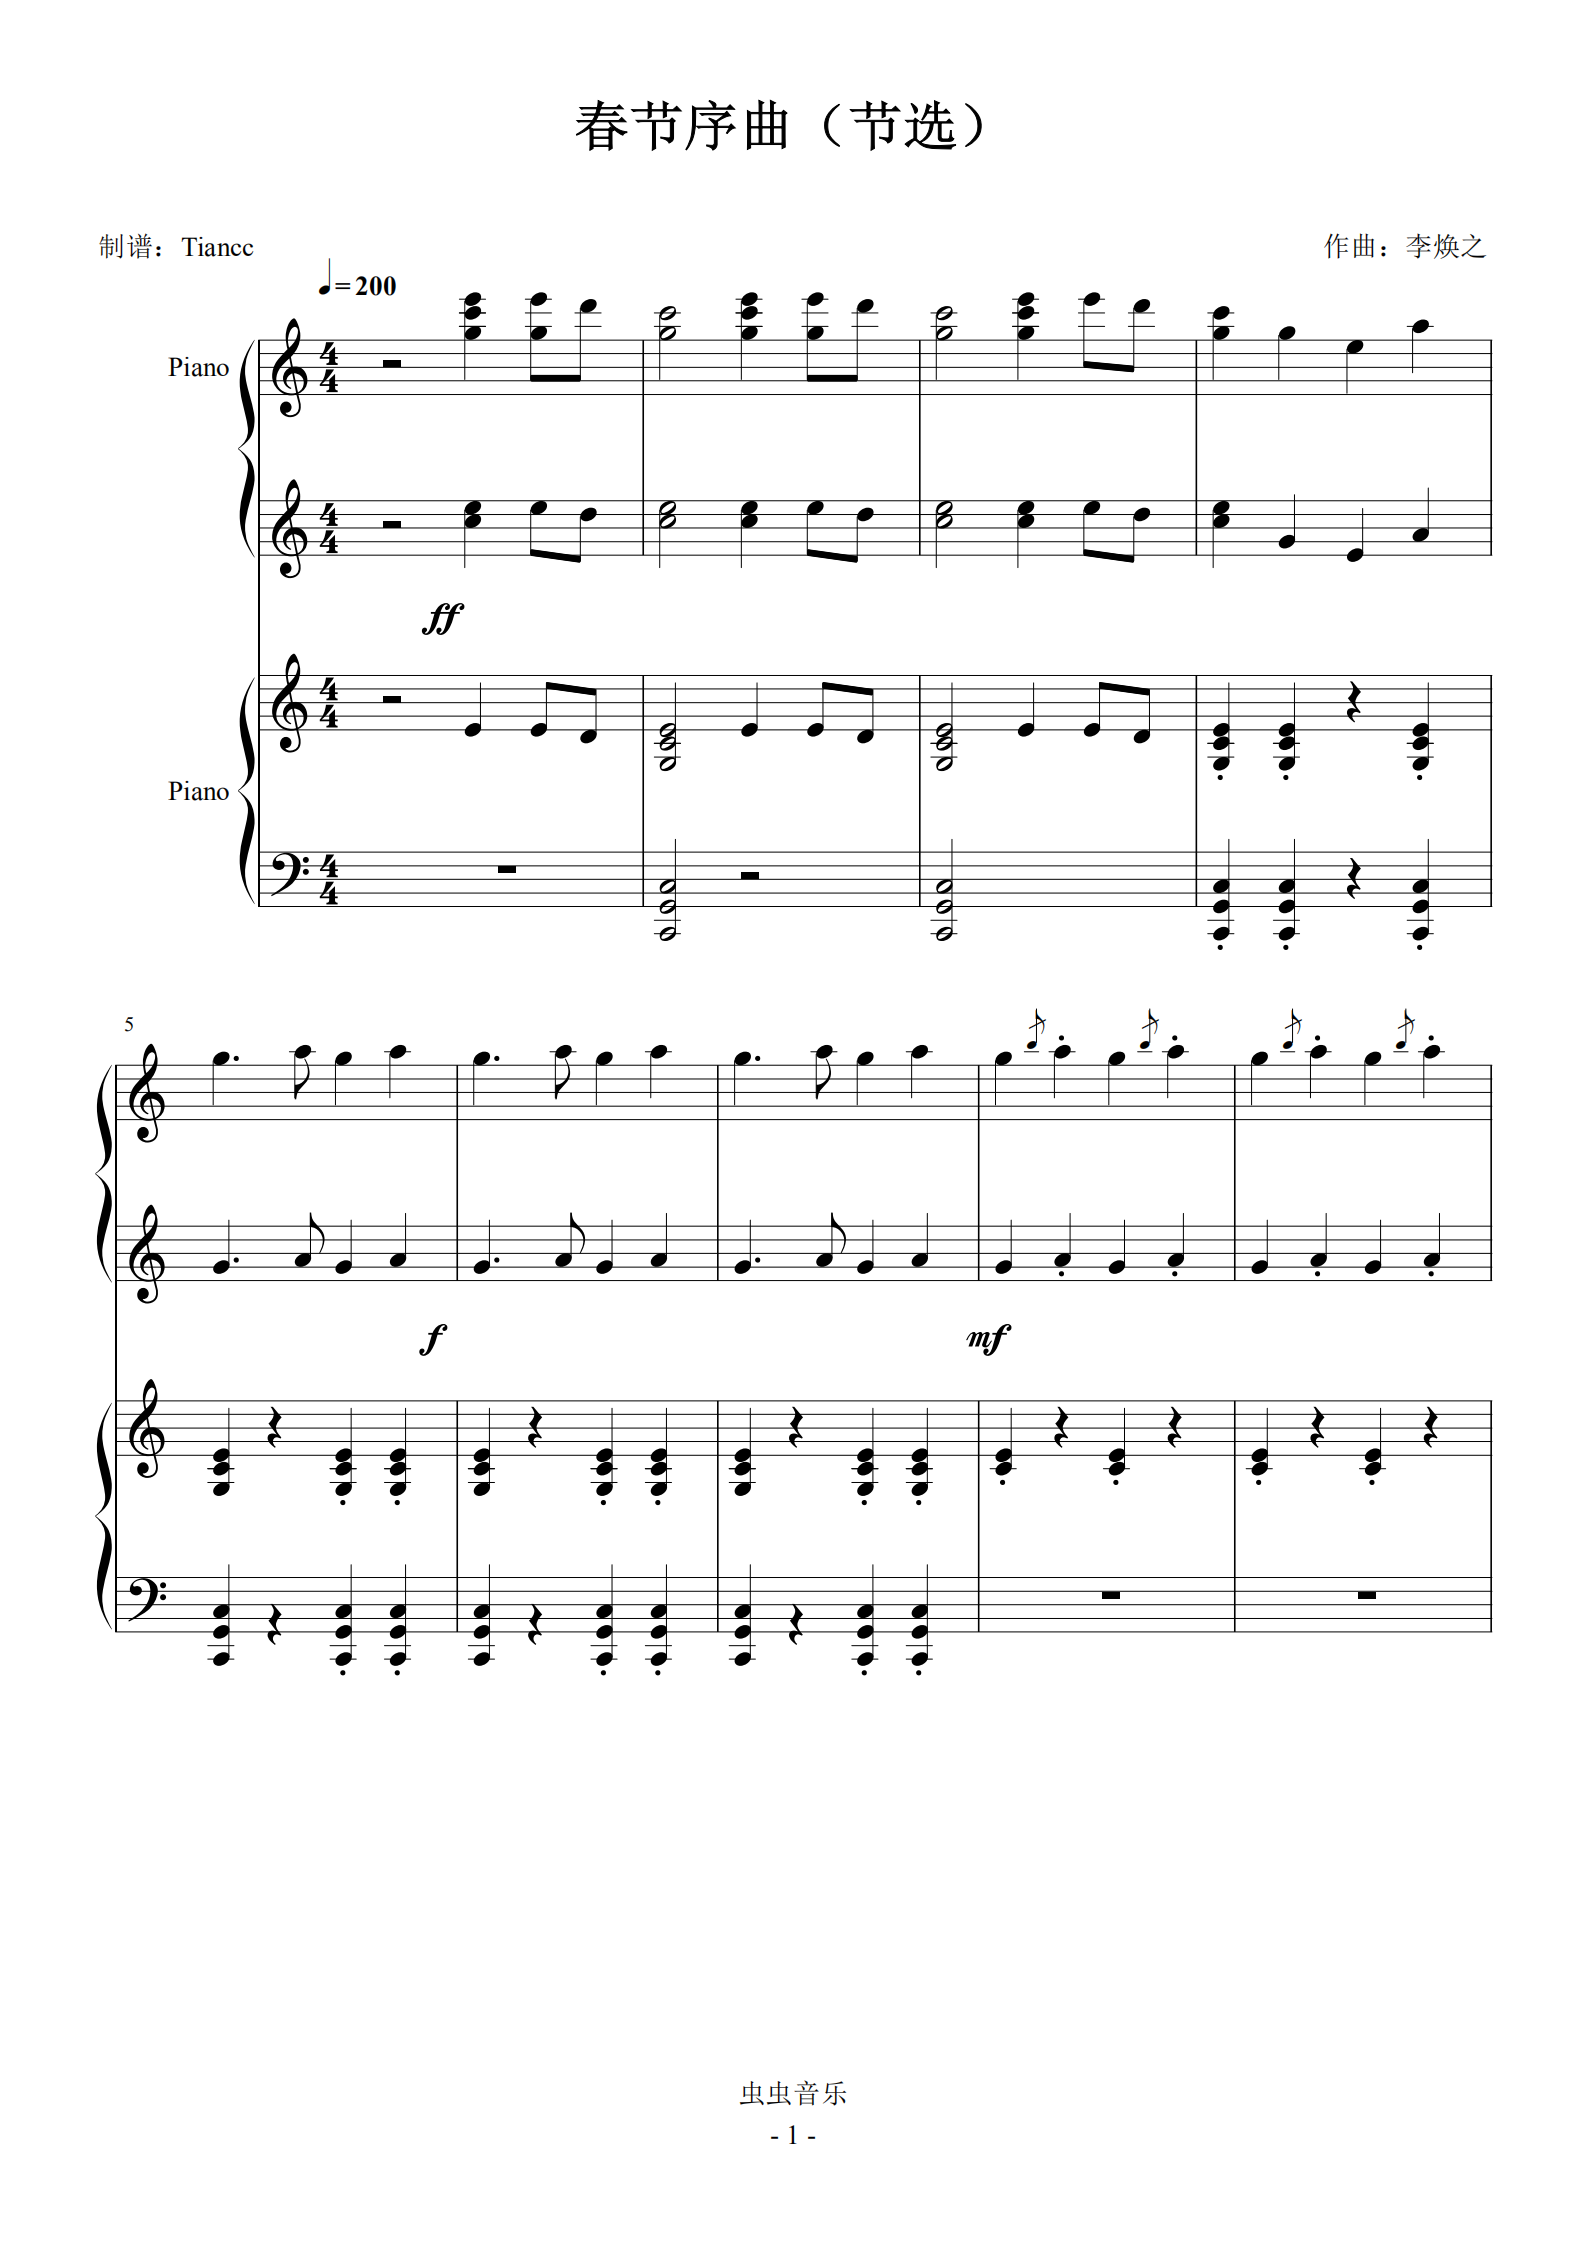 首页 钢琴谱库 《春节序曲(节选)》四手联弹谱,春节快到了,不来一首?